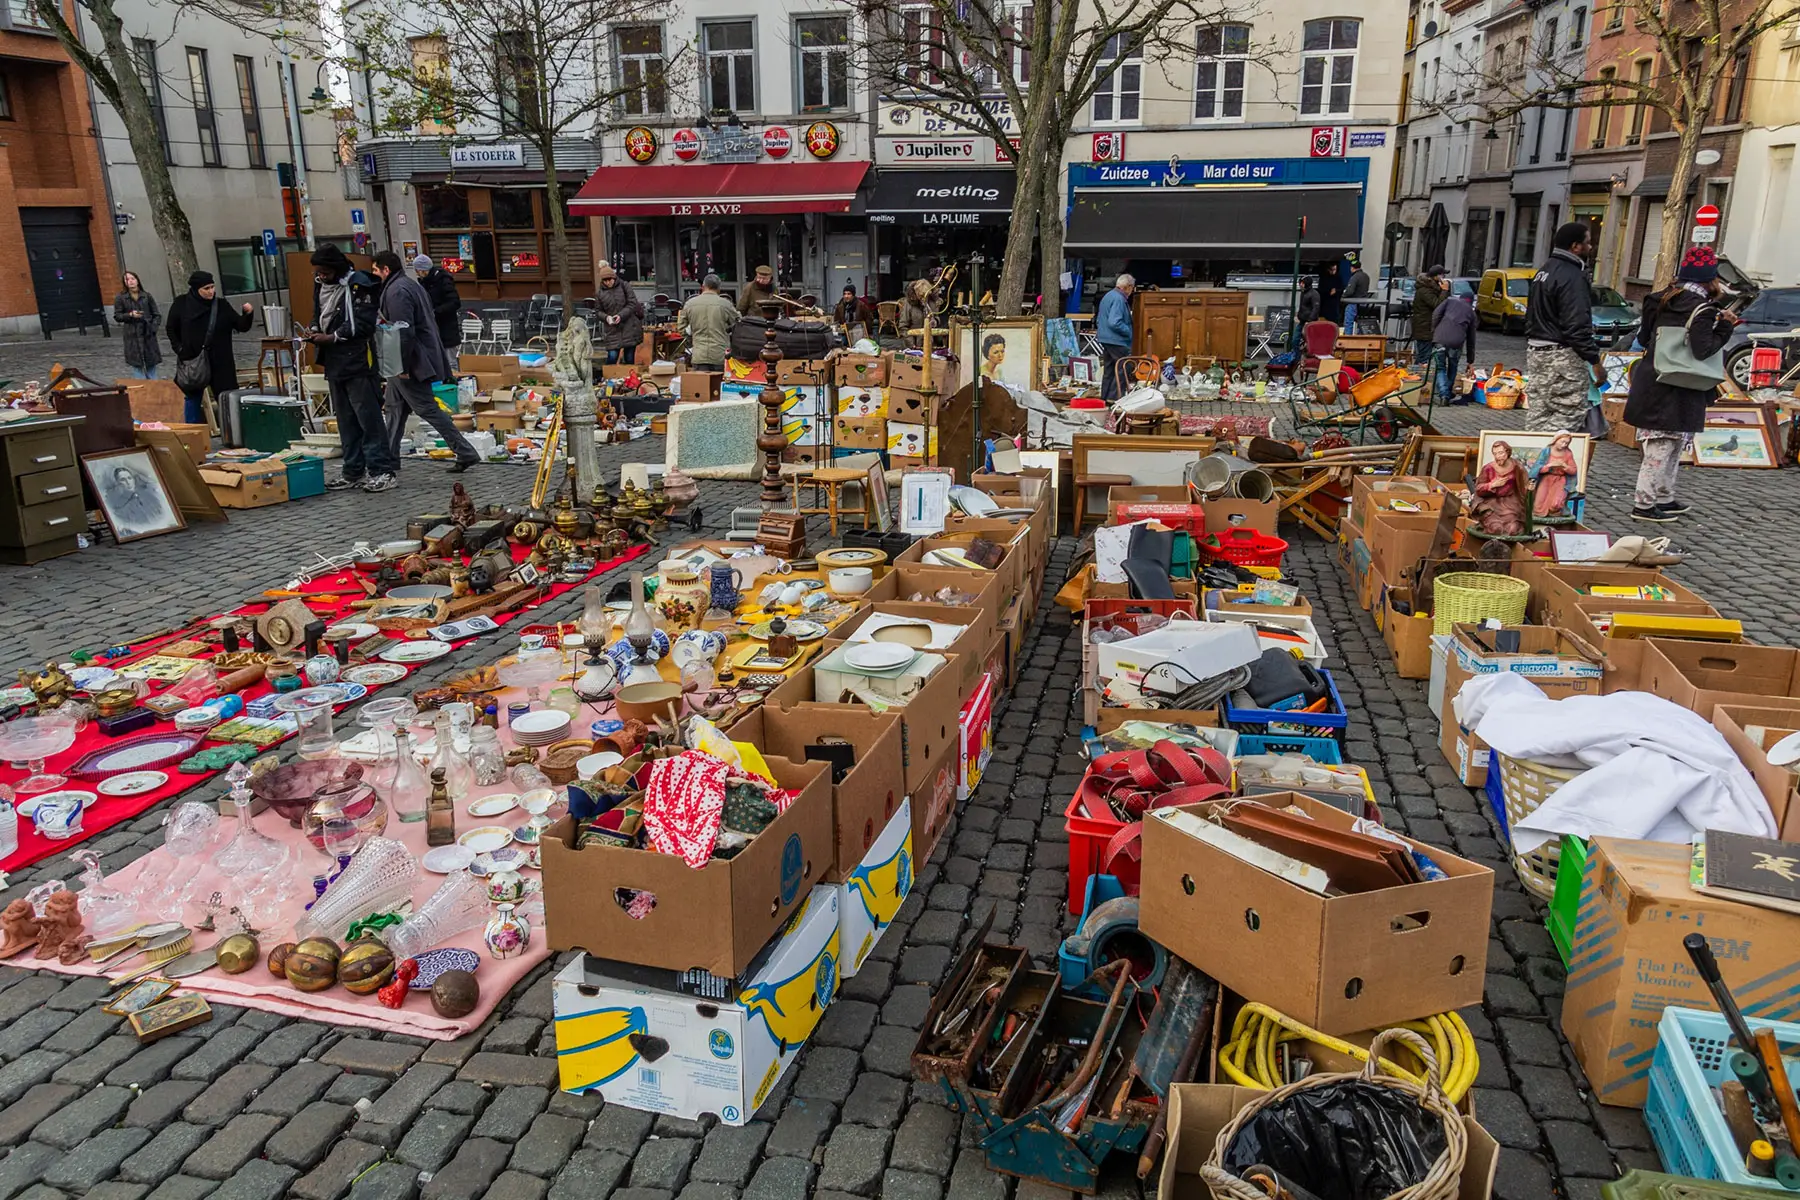 A flea market in Marolles, Brussels